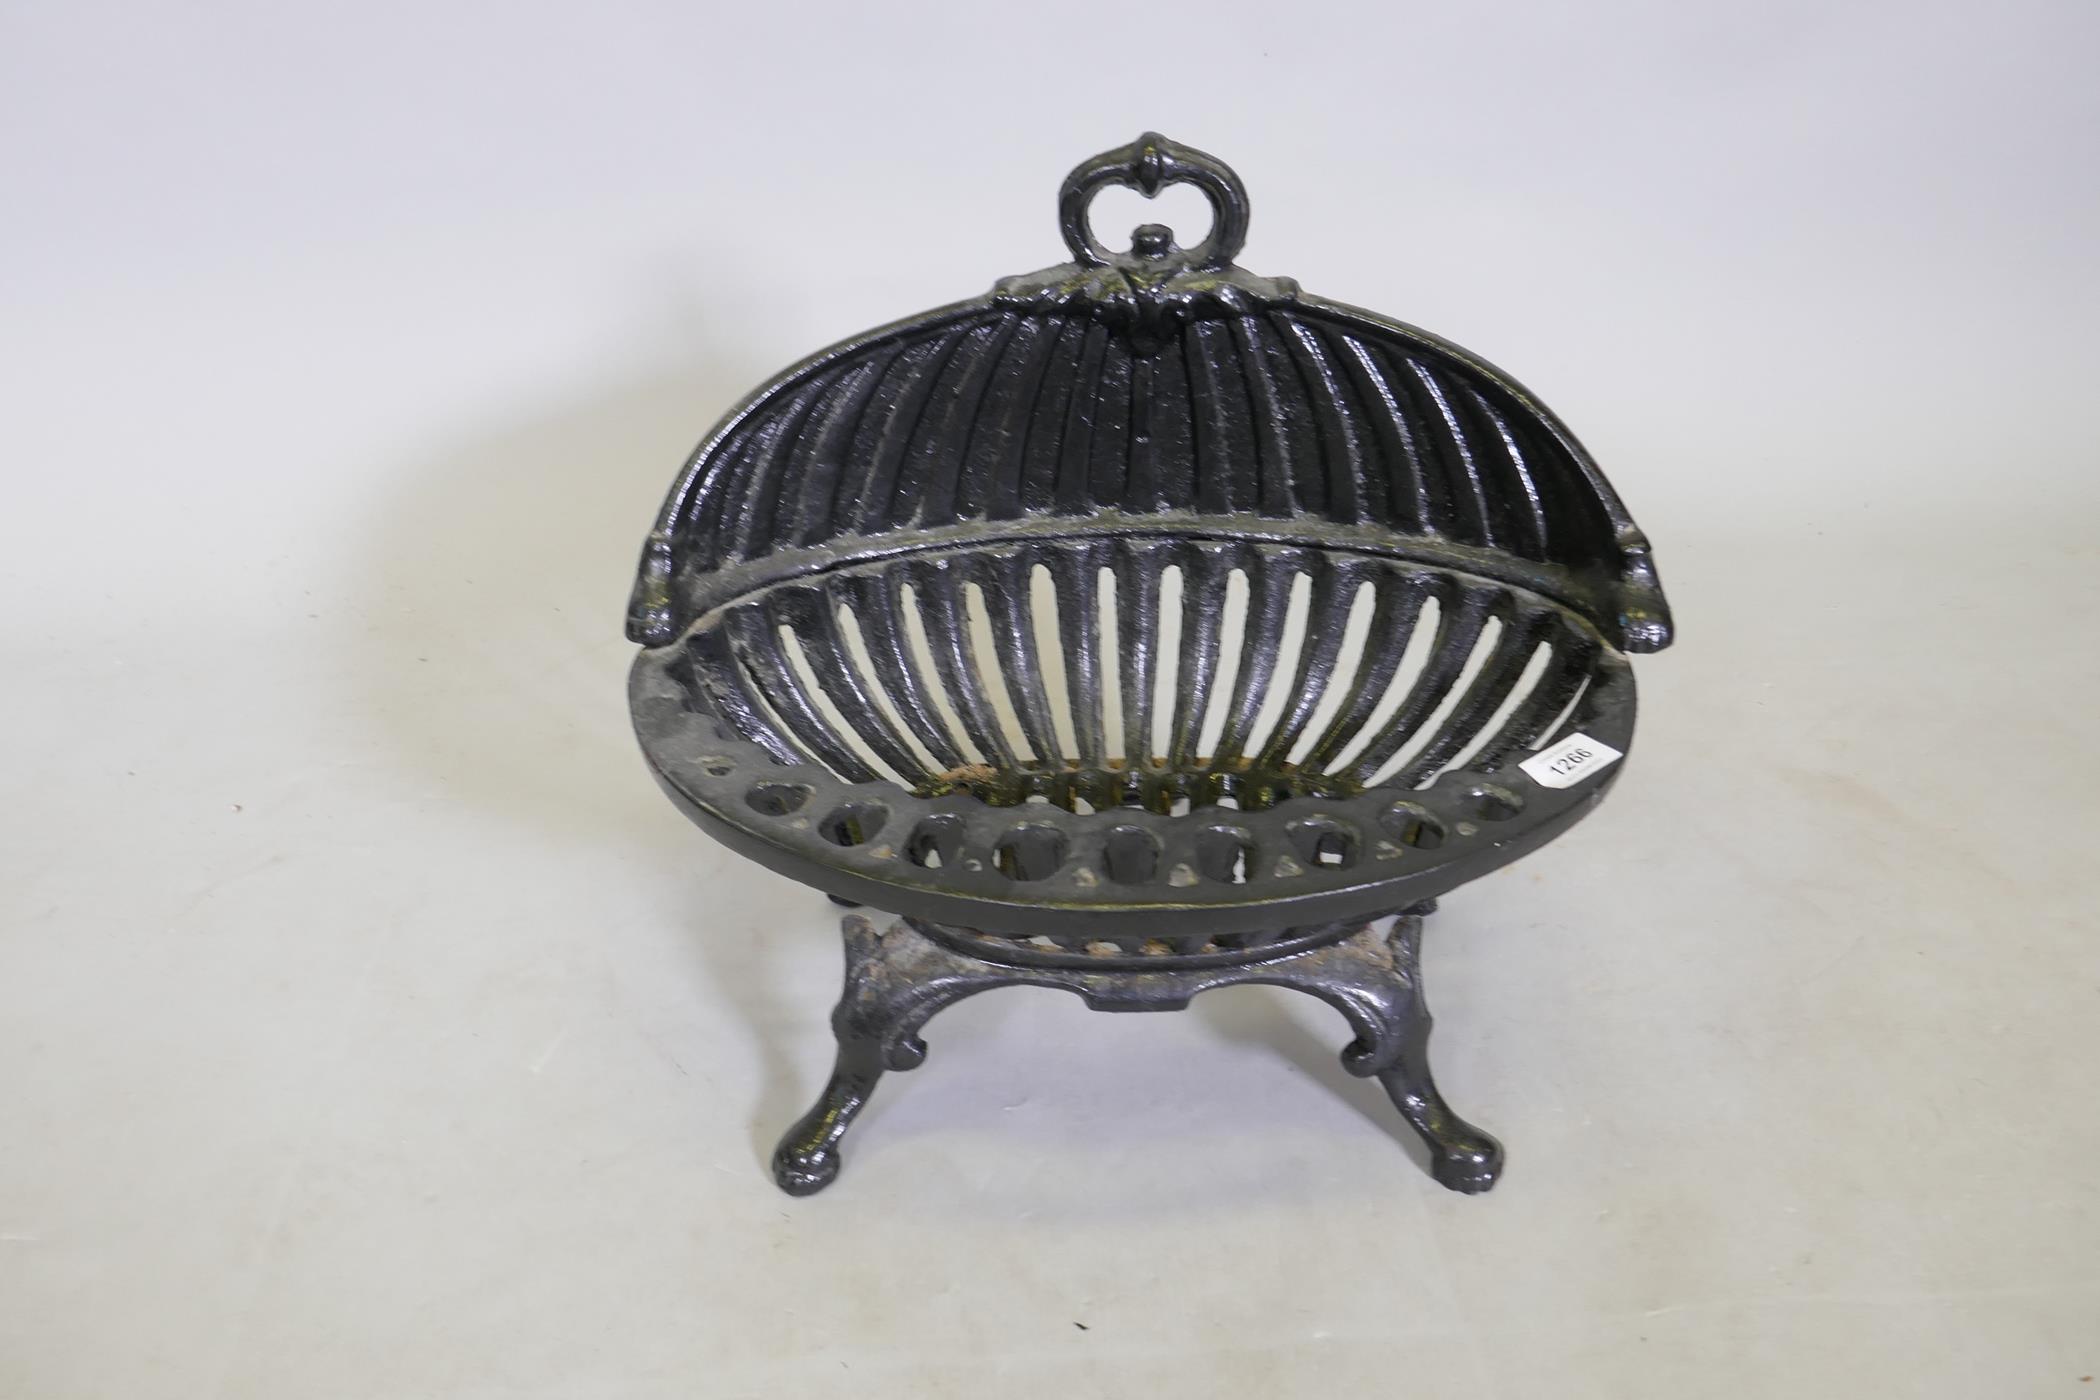 A C19th painted cast iron fire basket, 49 x 45cm